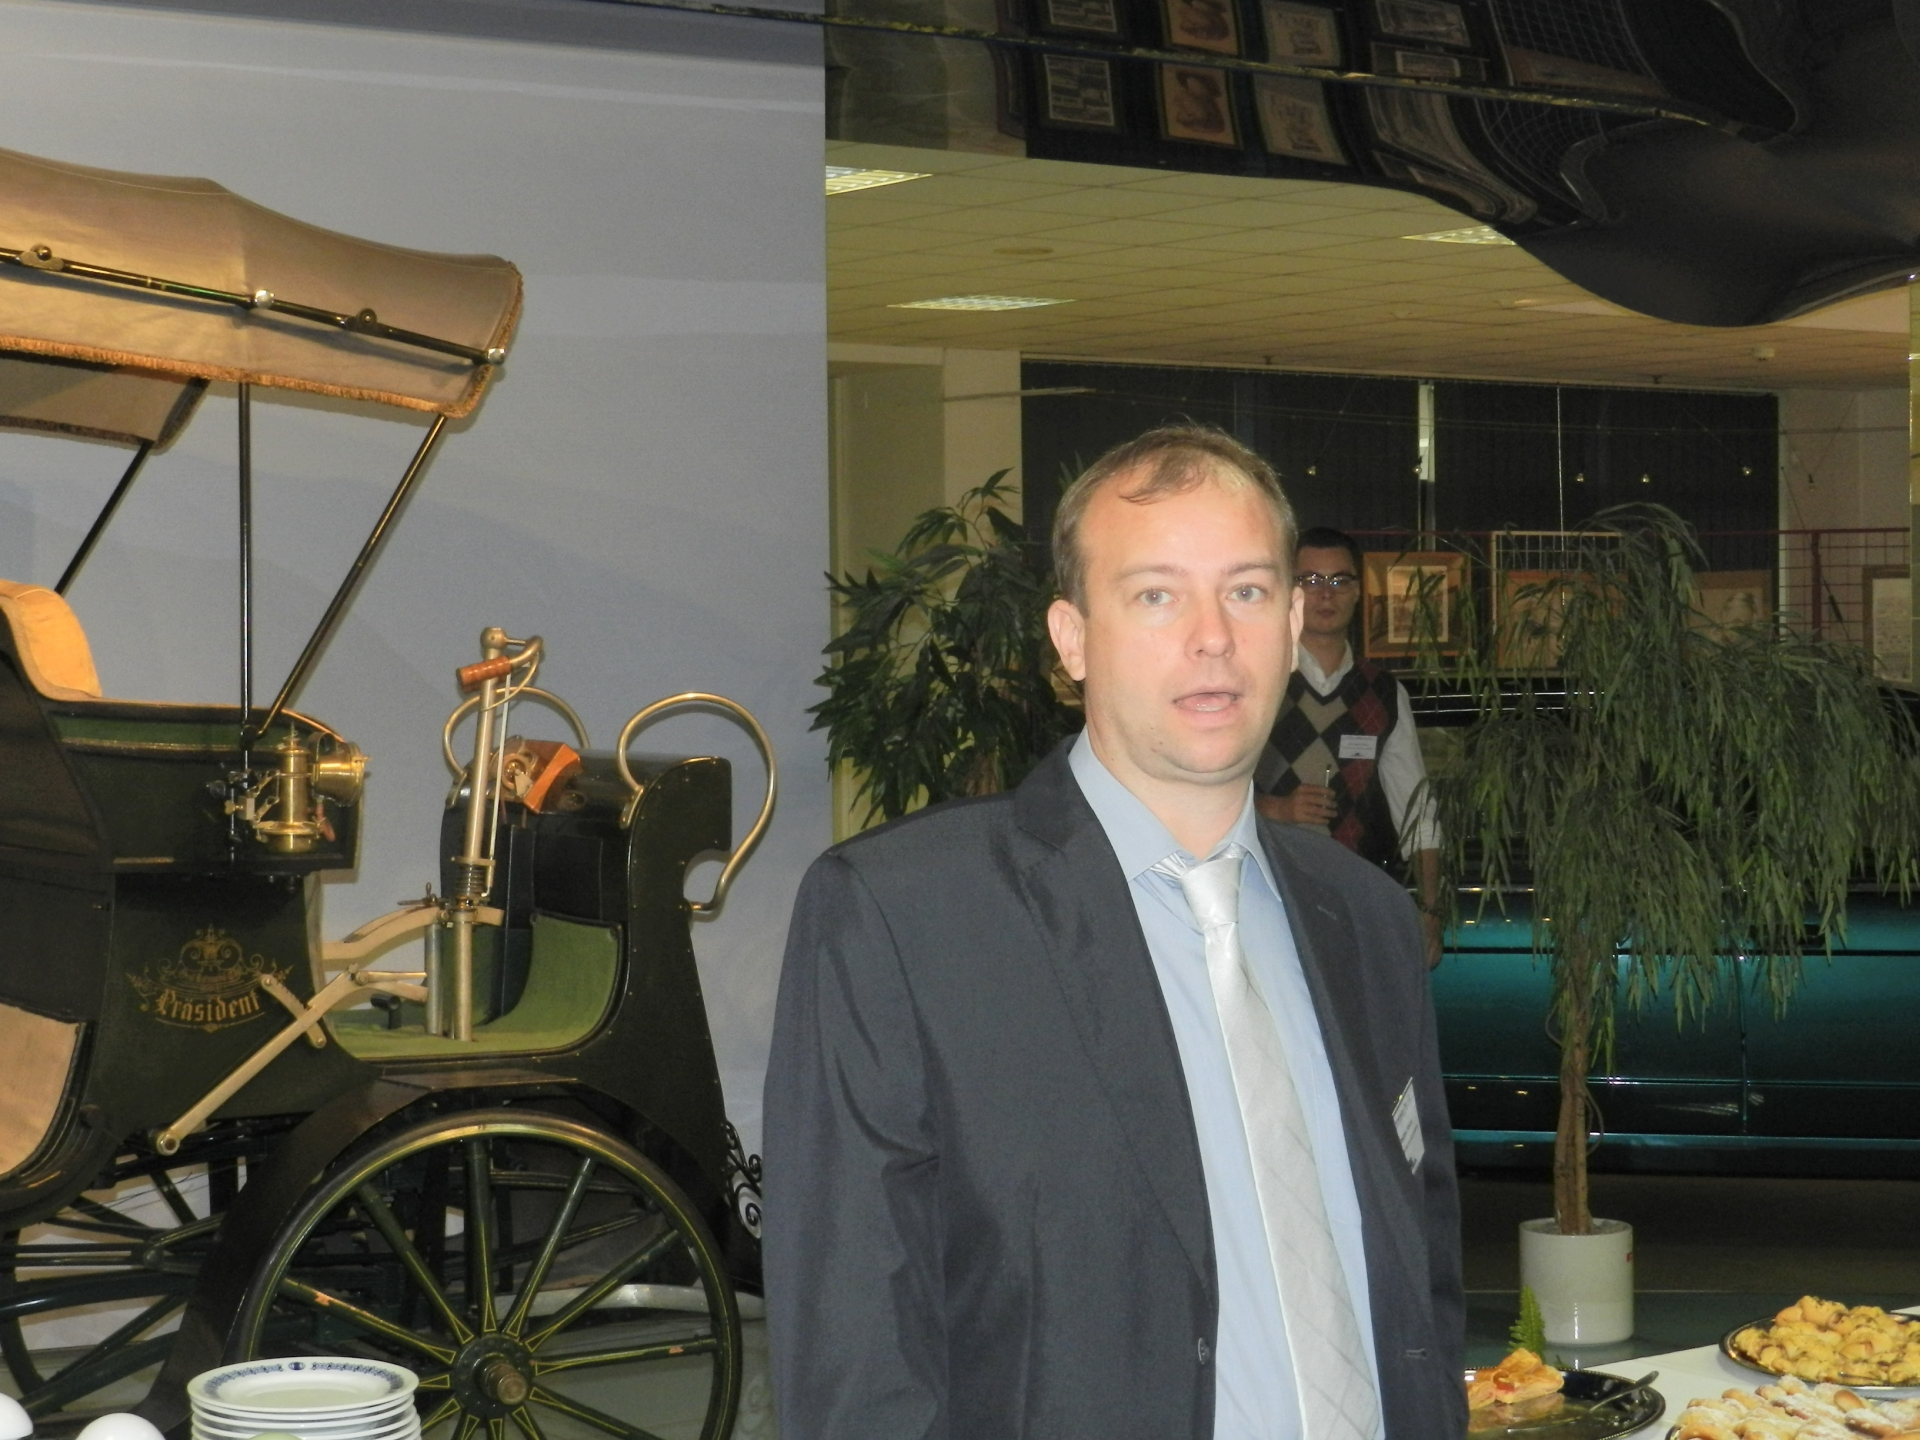 Obr. 1 Účastníkov semináru privítal v priestoroch múzea Ing. Vlastimil Raška, výkonný riaditeľ spoločnosti ATS aplikované technické systémy, s.r.o.